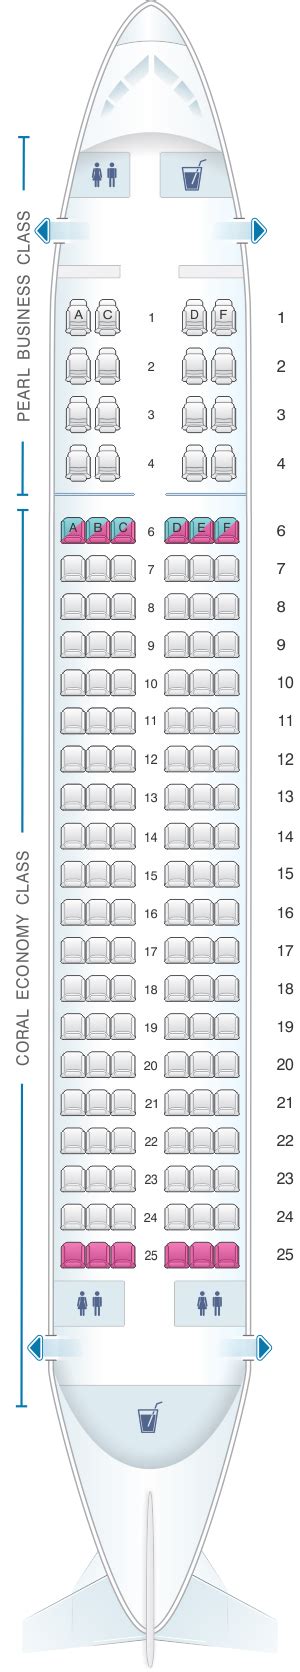 Seat Map Etihad Airways Airbus A320 200